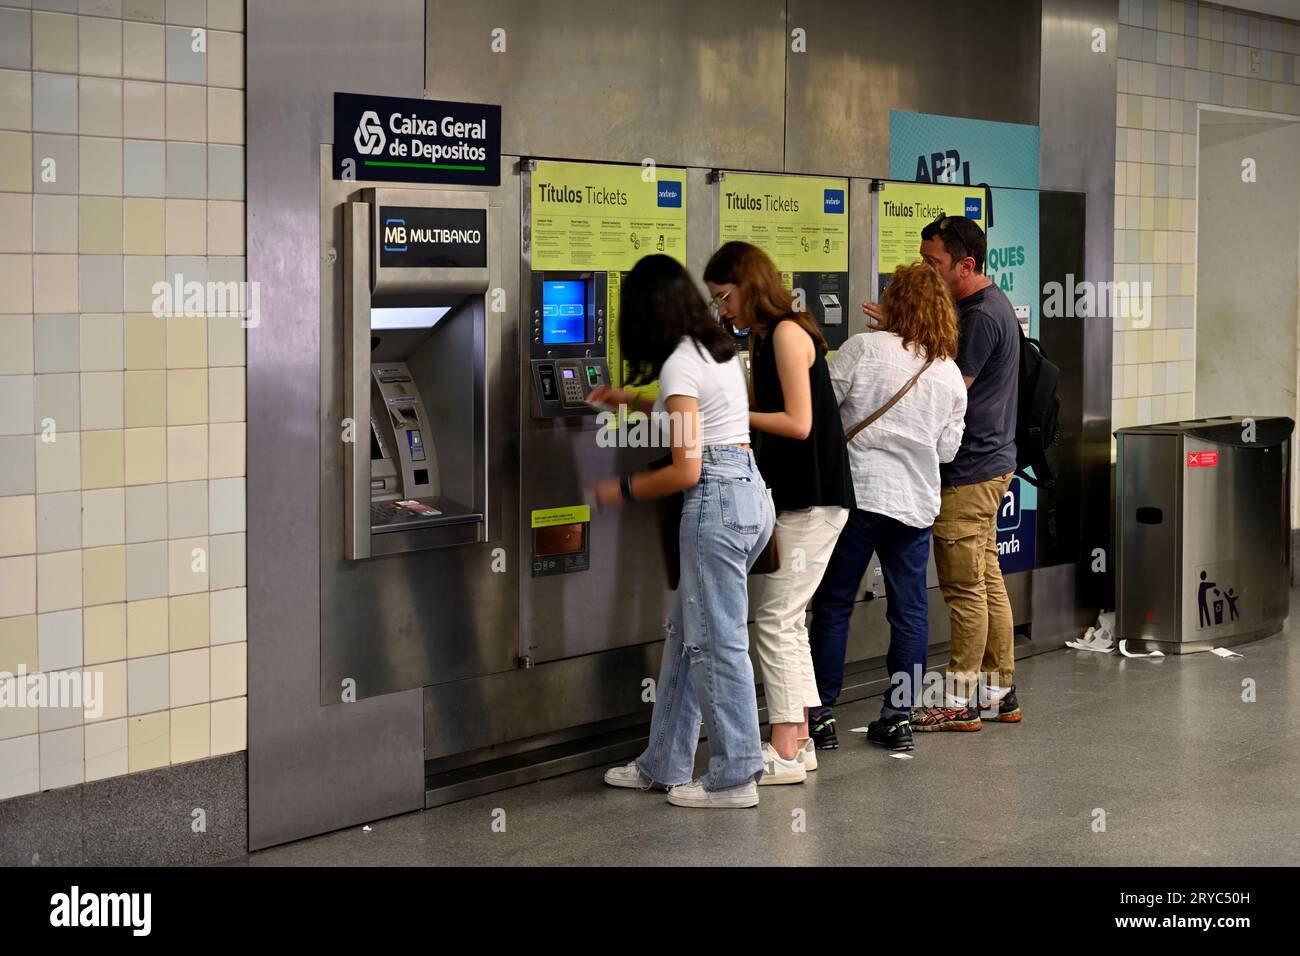 Les gens achètent des billets de train aux distributeurs pour le métro, Porto, Portugal Banque D'Images